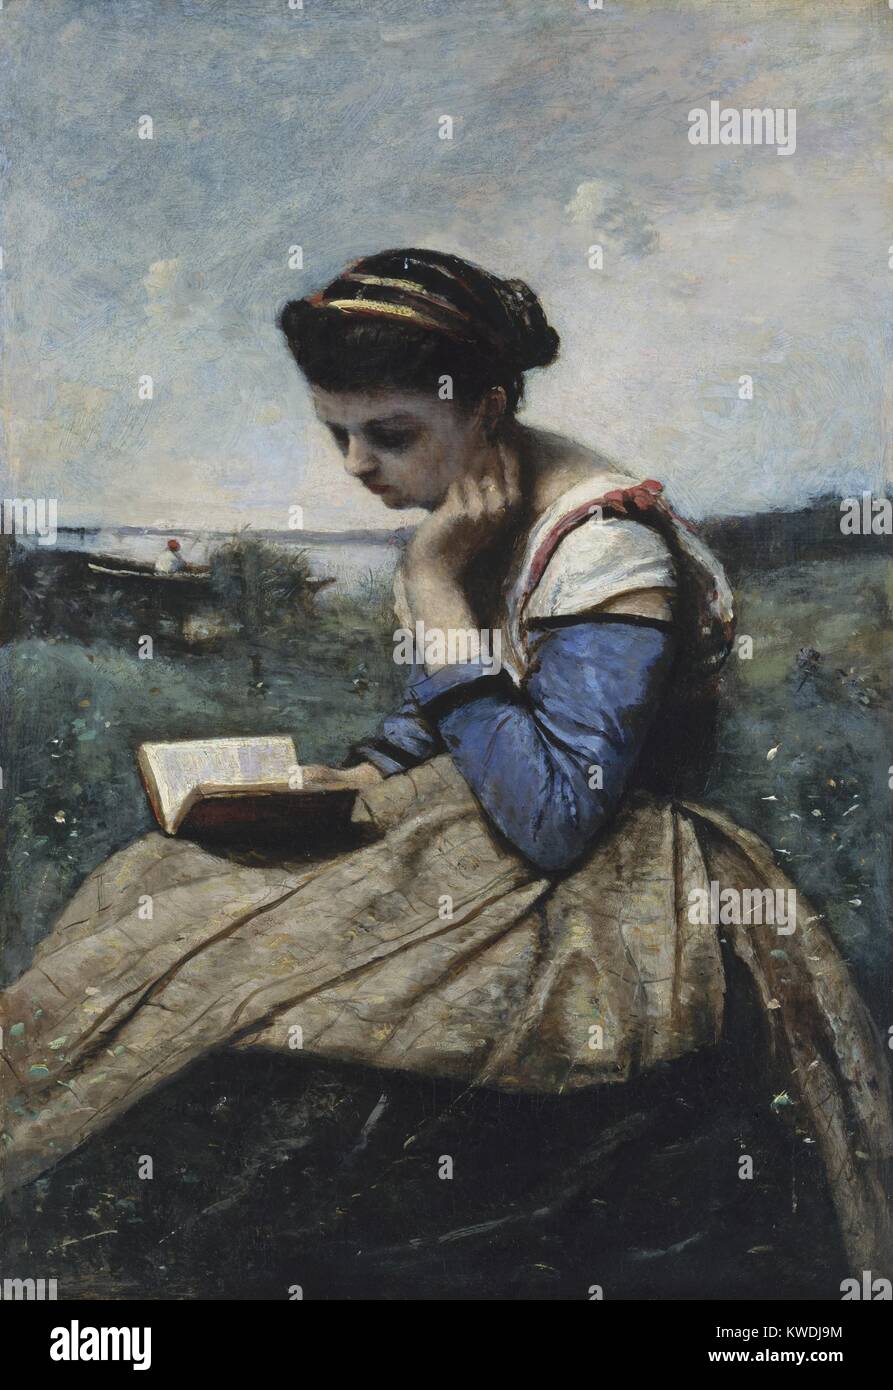 Una mujer leyendo, por Camille Corot, 1869-70, pintura francesa, óleo sobre lienzo. Esta fue la primera figura pintura Corot exhibido en el Salón de París, cuando fue establecido y apreciado artista (BSLOC 2017 9 96) Foto de stock